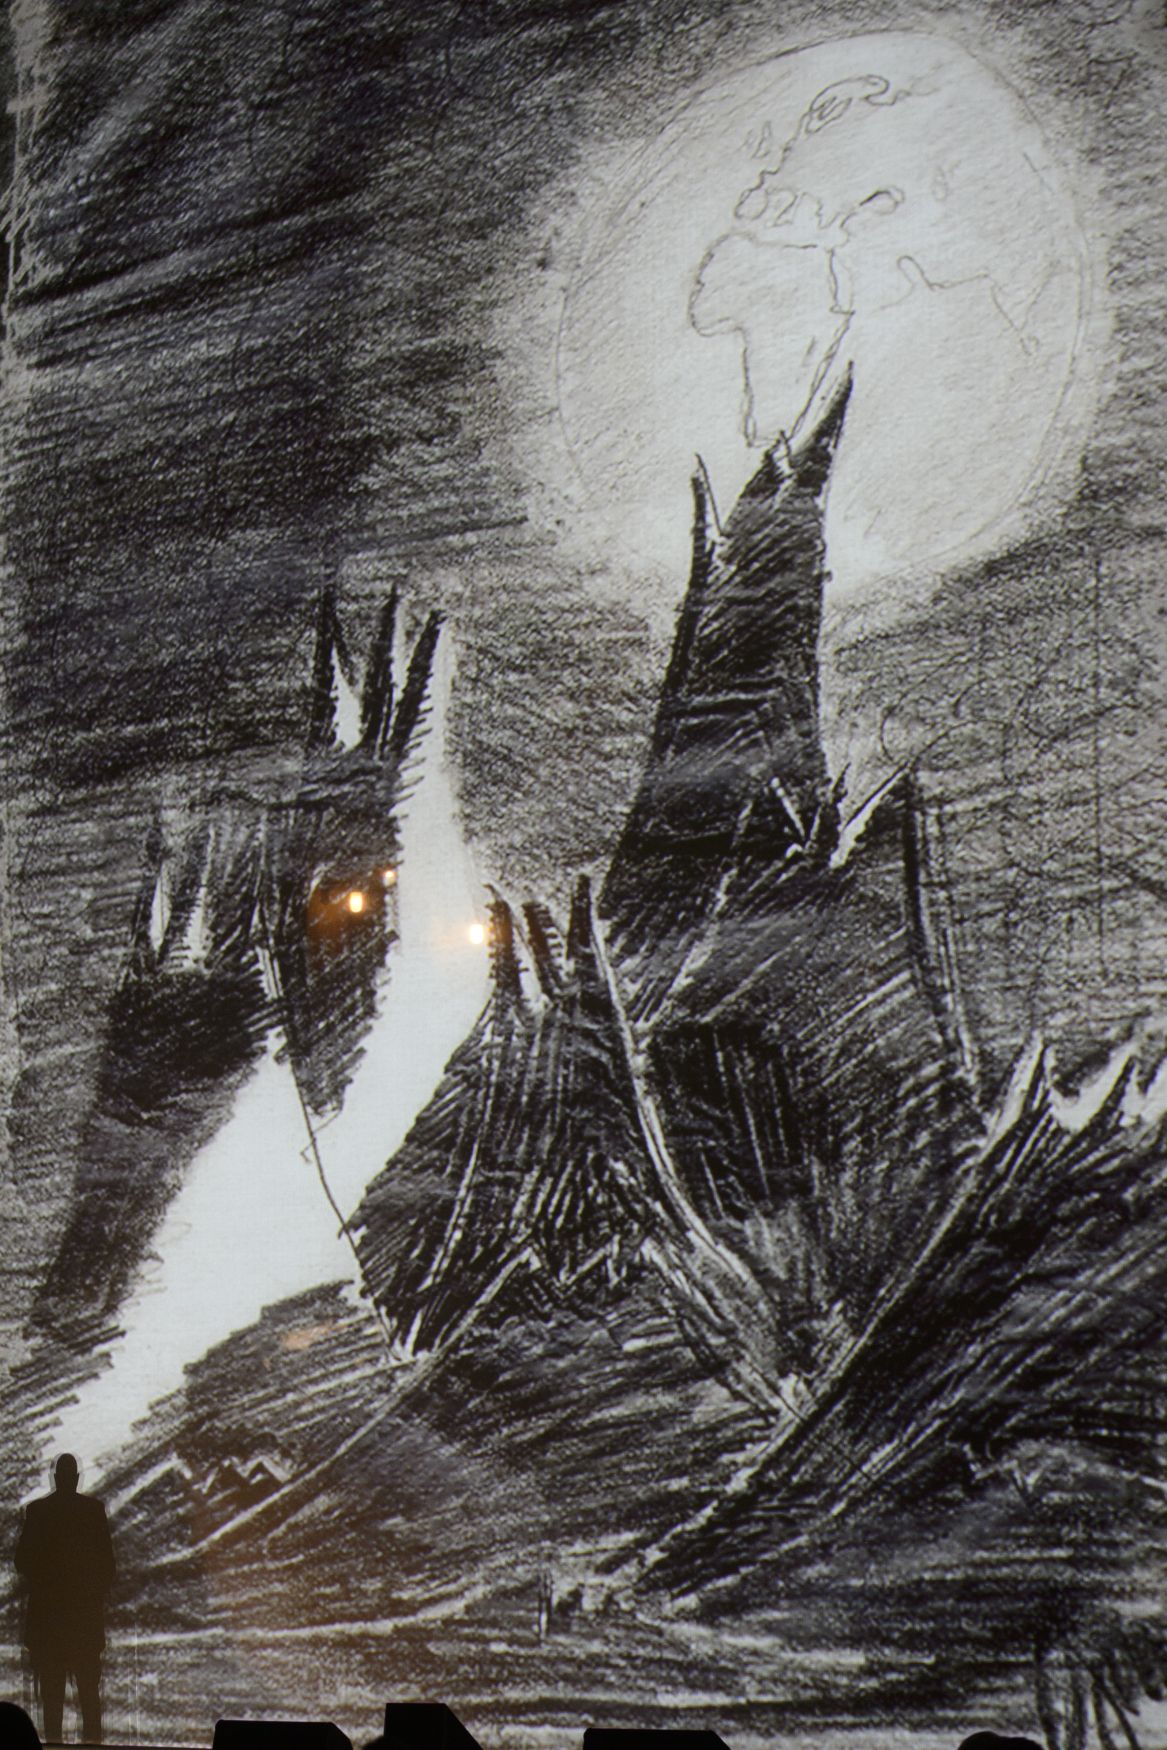 Měsíční krajina, kresba Petra Ginze z terezínského ghetta